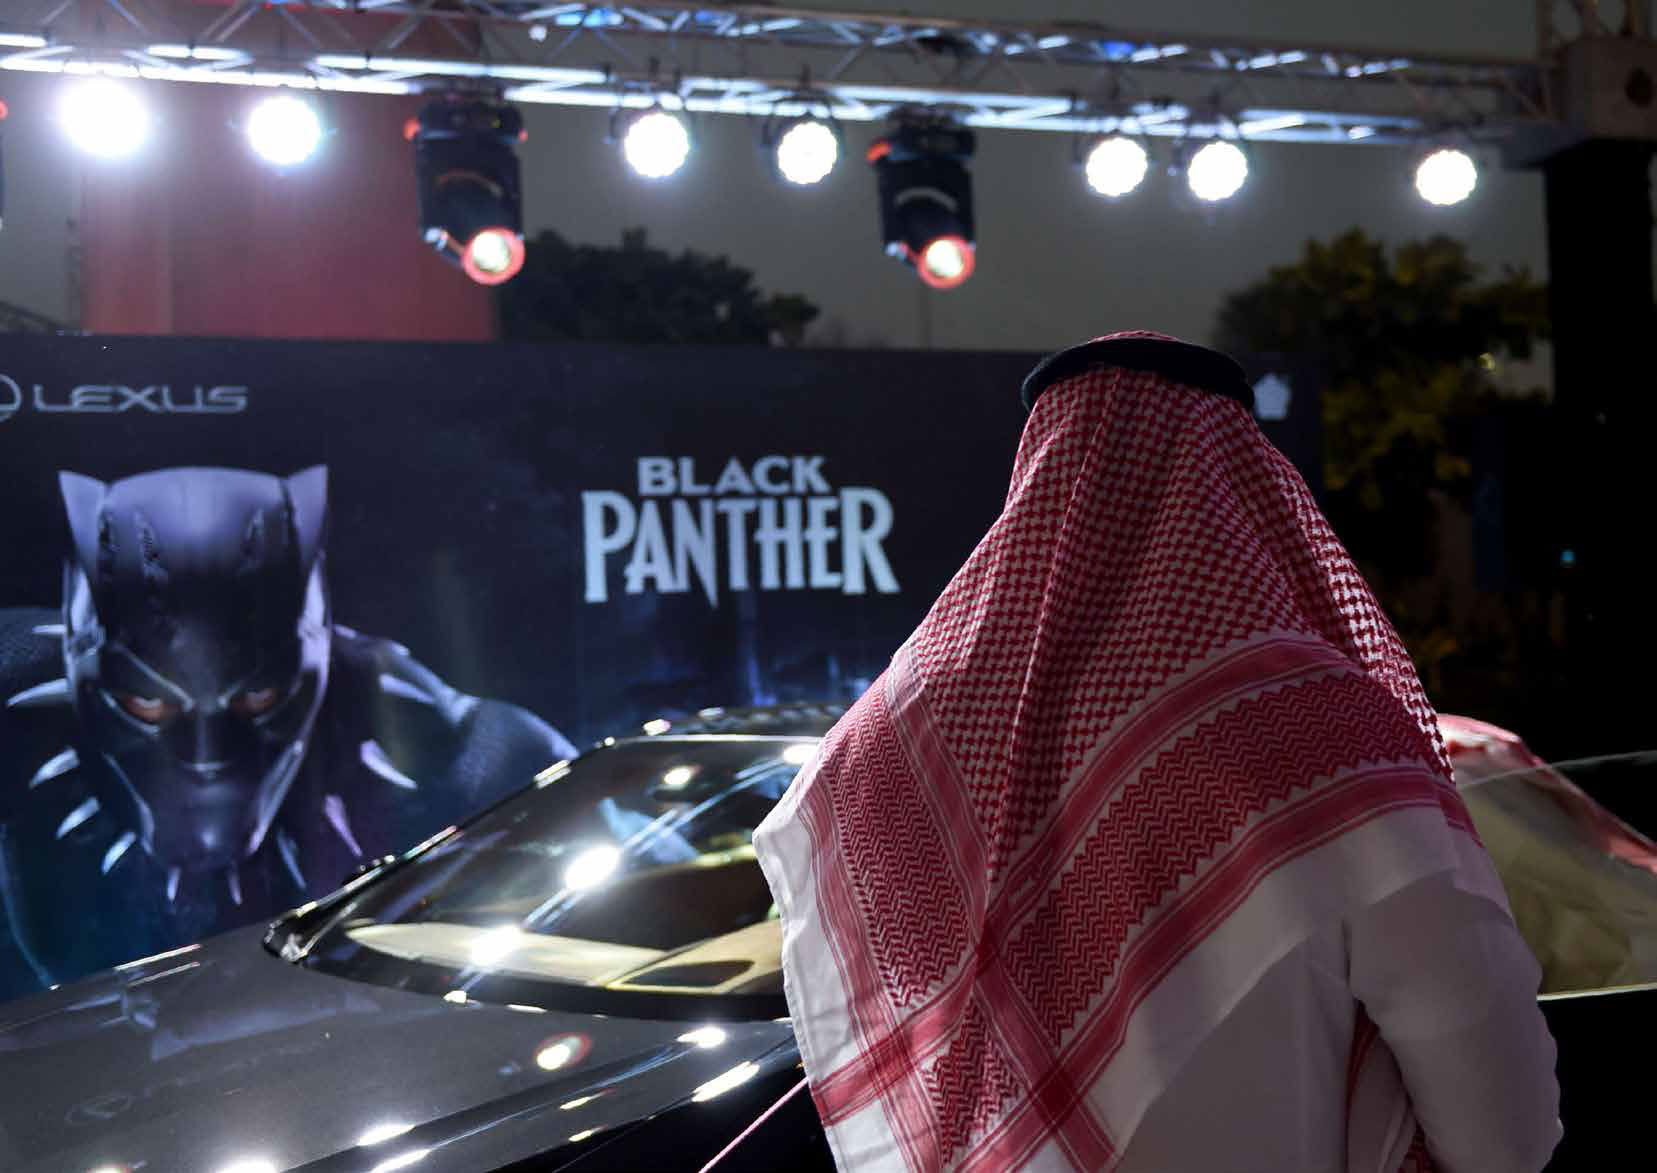 رجل سعودي ينظر إلى سيارة أثناء عرض تجريبي لفيلم "الفهد الأسود" بالرياض في 18 أبريل الماضي